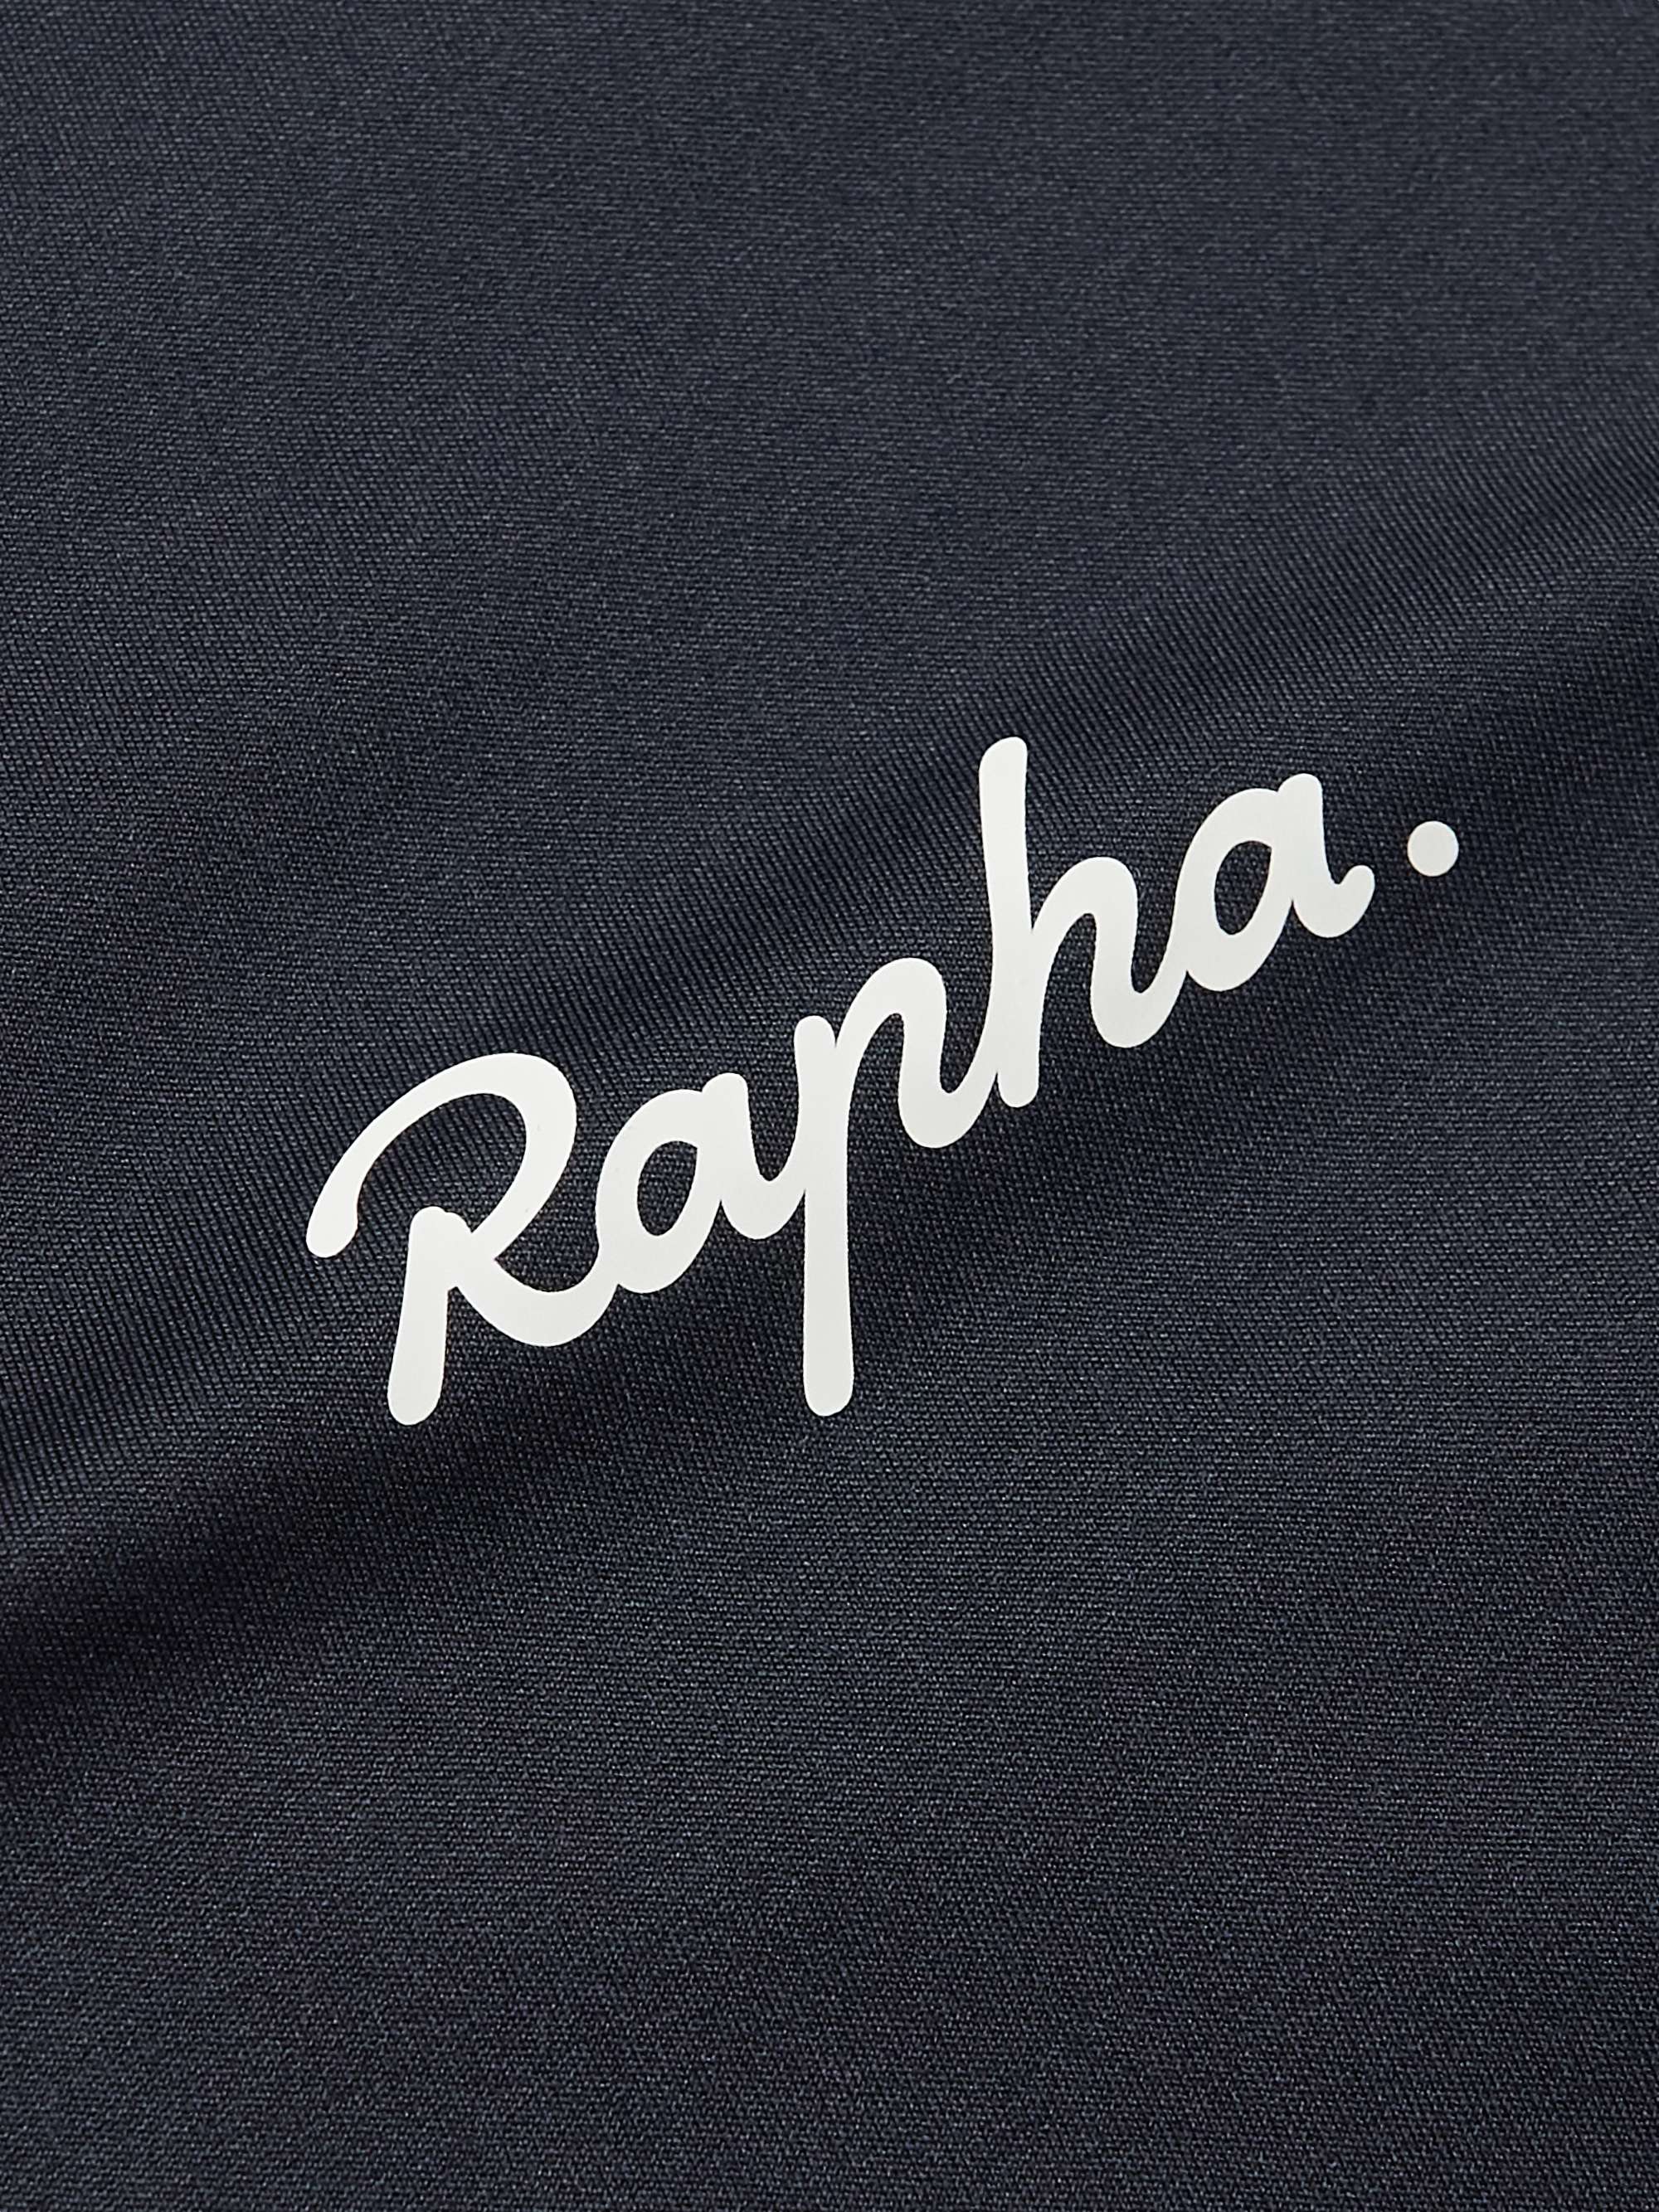 RAPHA Core Cycling Jersey